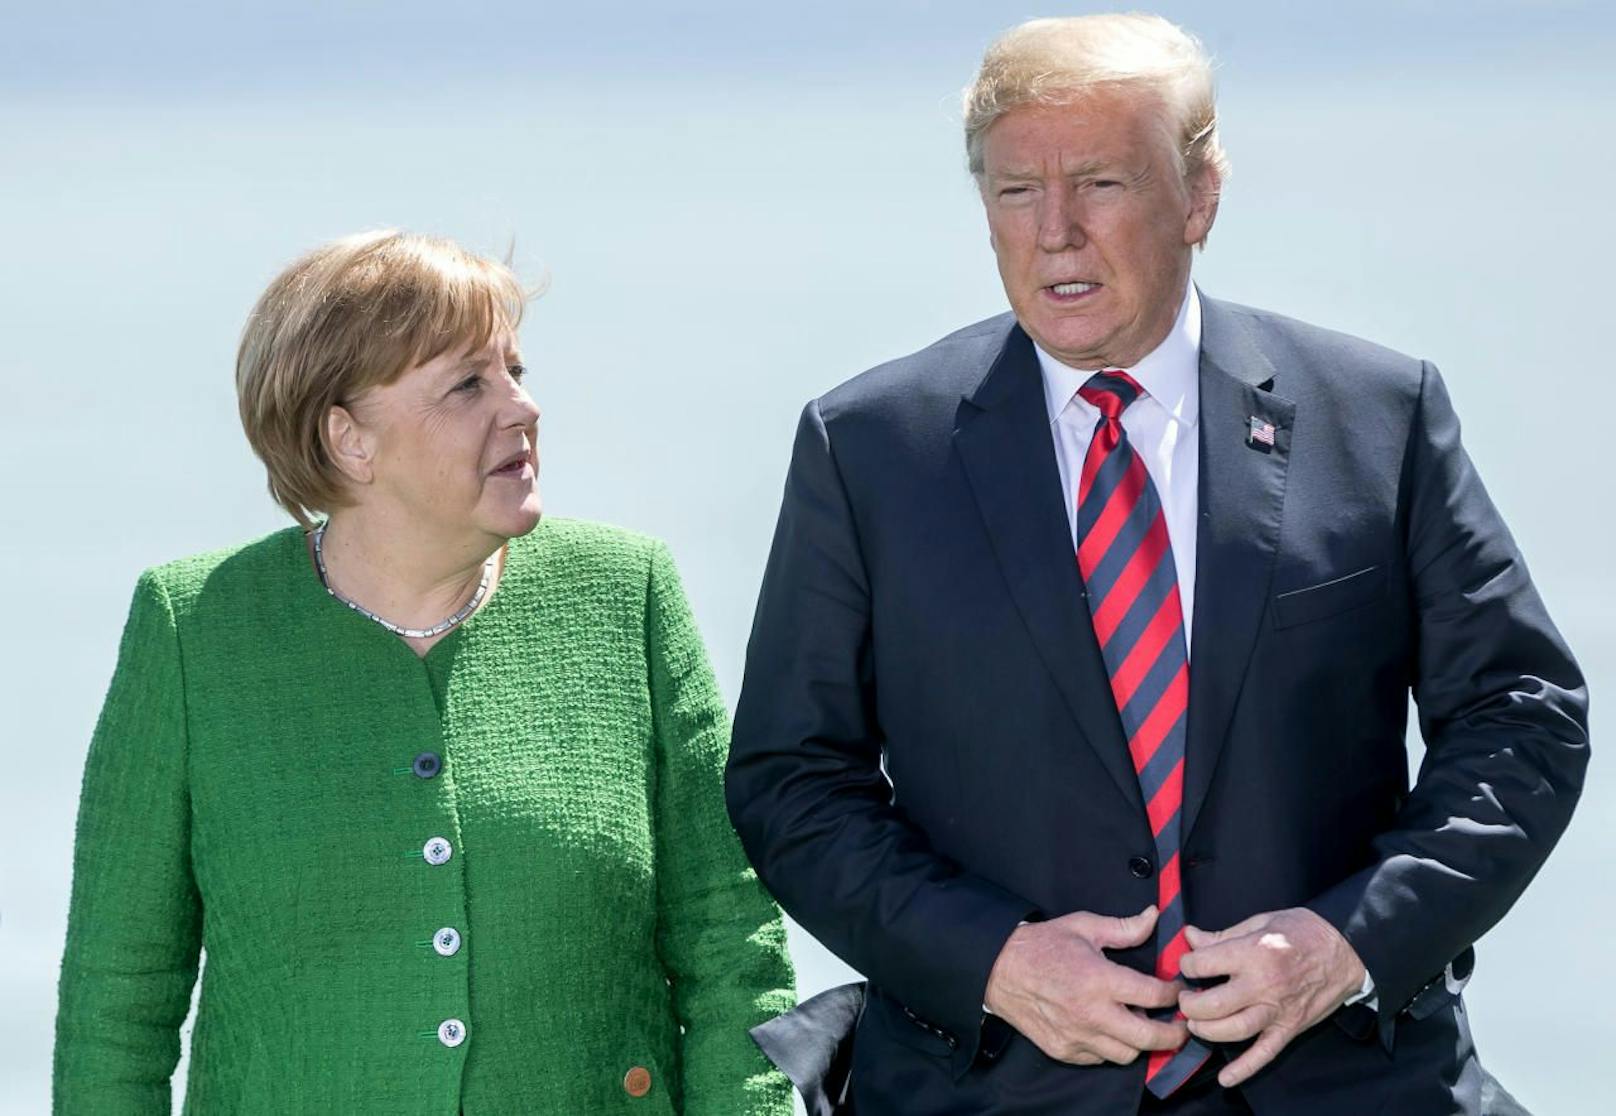 Angela Merkel und Donald Trump während des G7-Gipfels in Kanada am 8. Juni 2018.